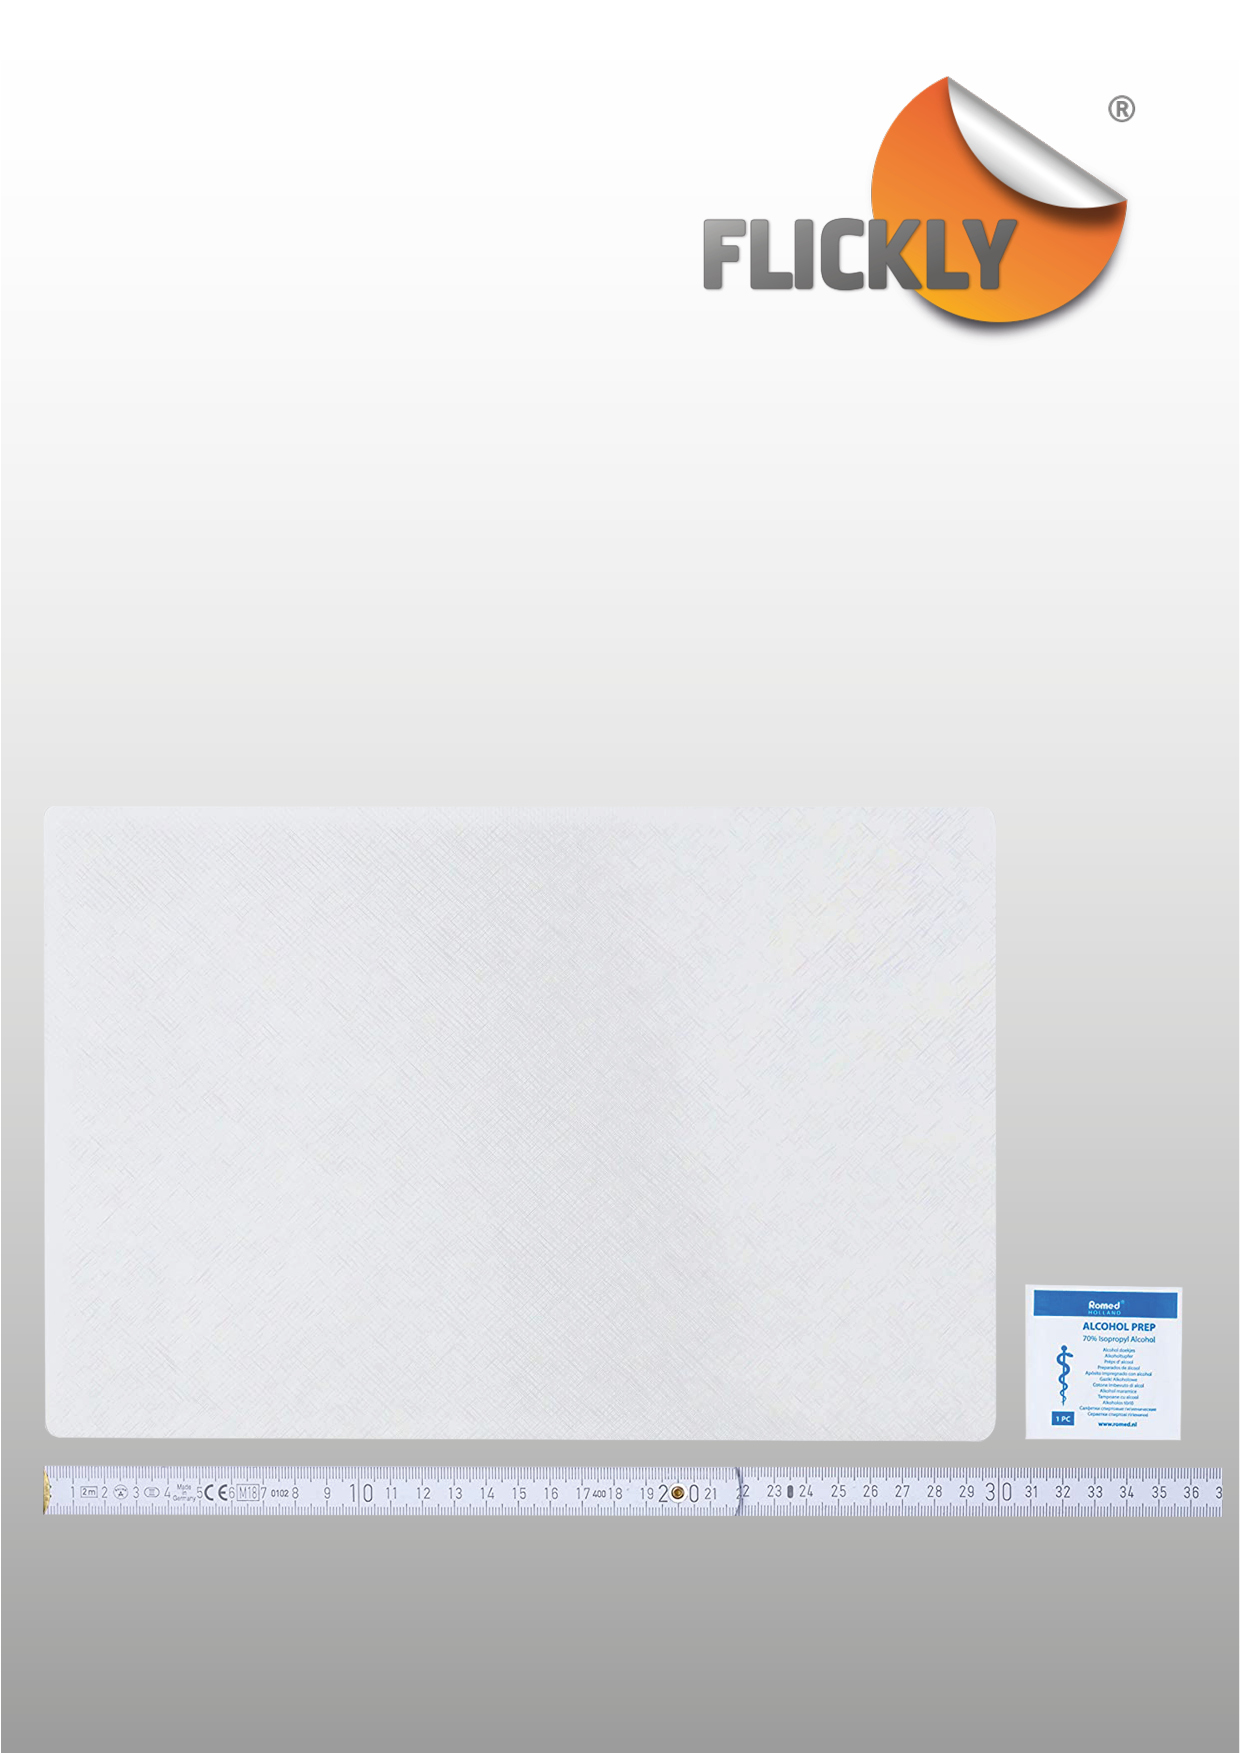 Flickly® Reparatur Pflaster